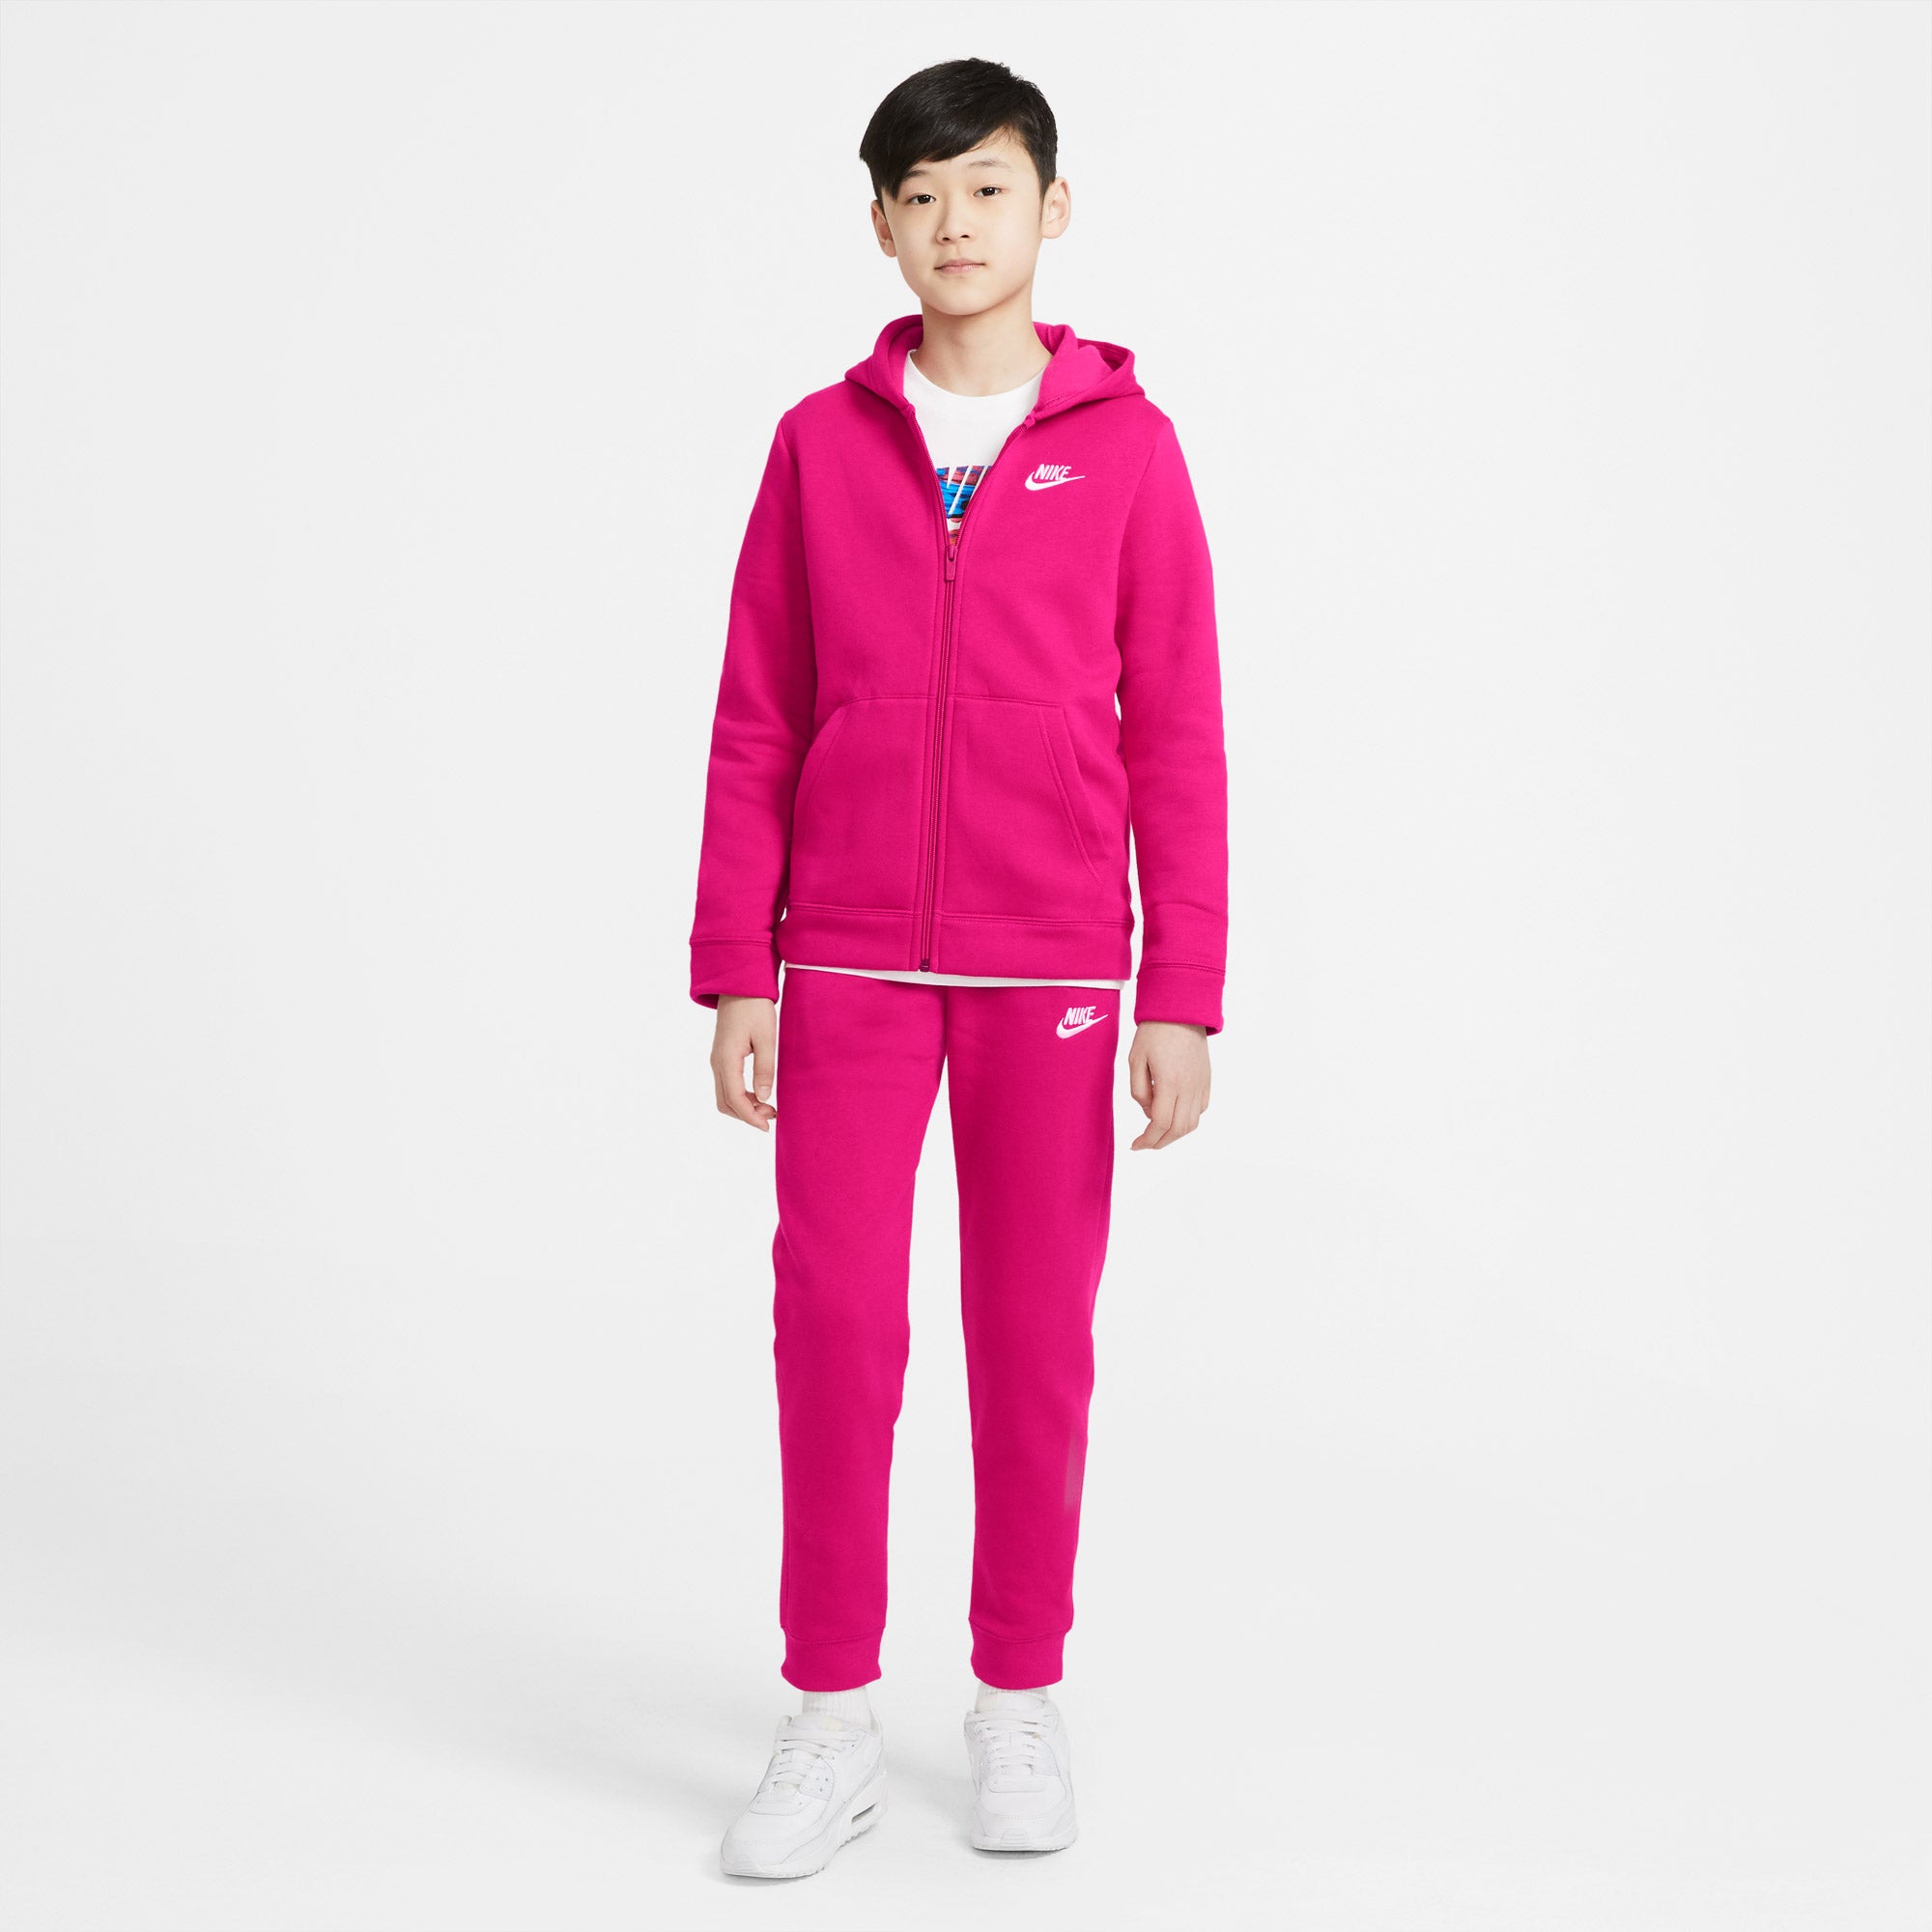 Nike Sportswear Kids' Tracksuit Pink (1)